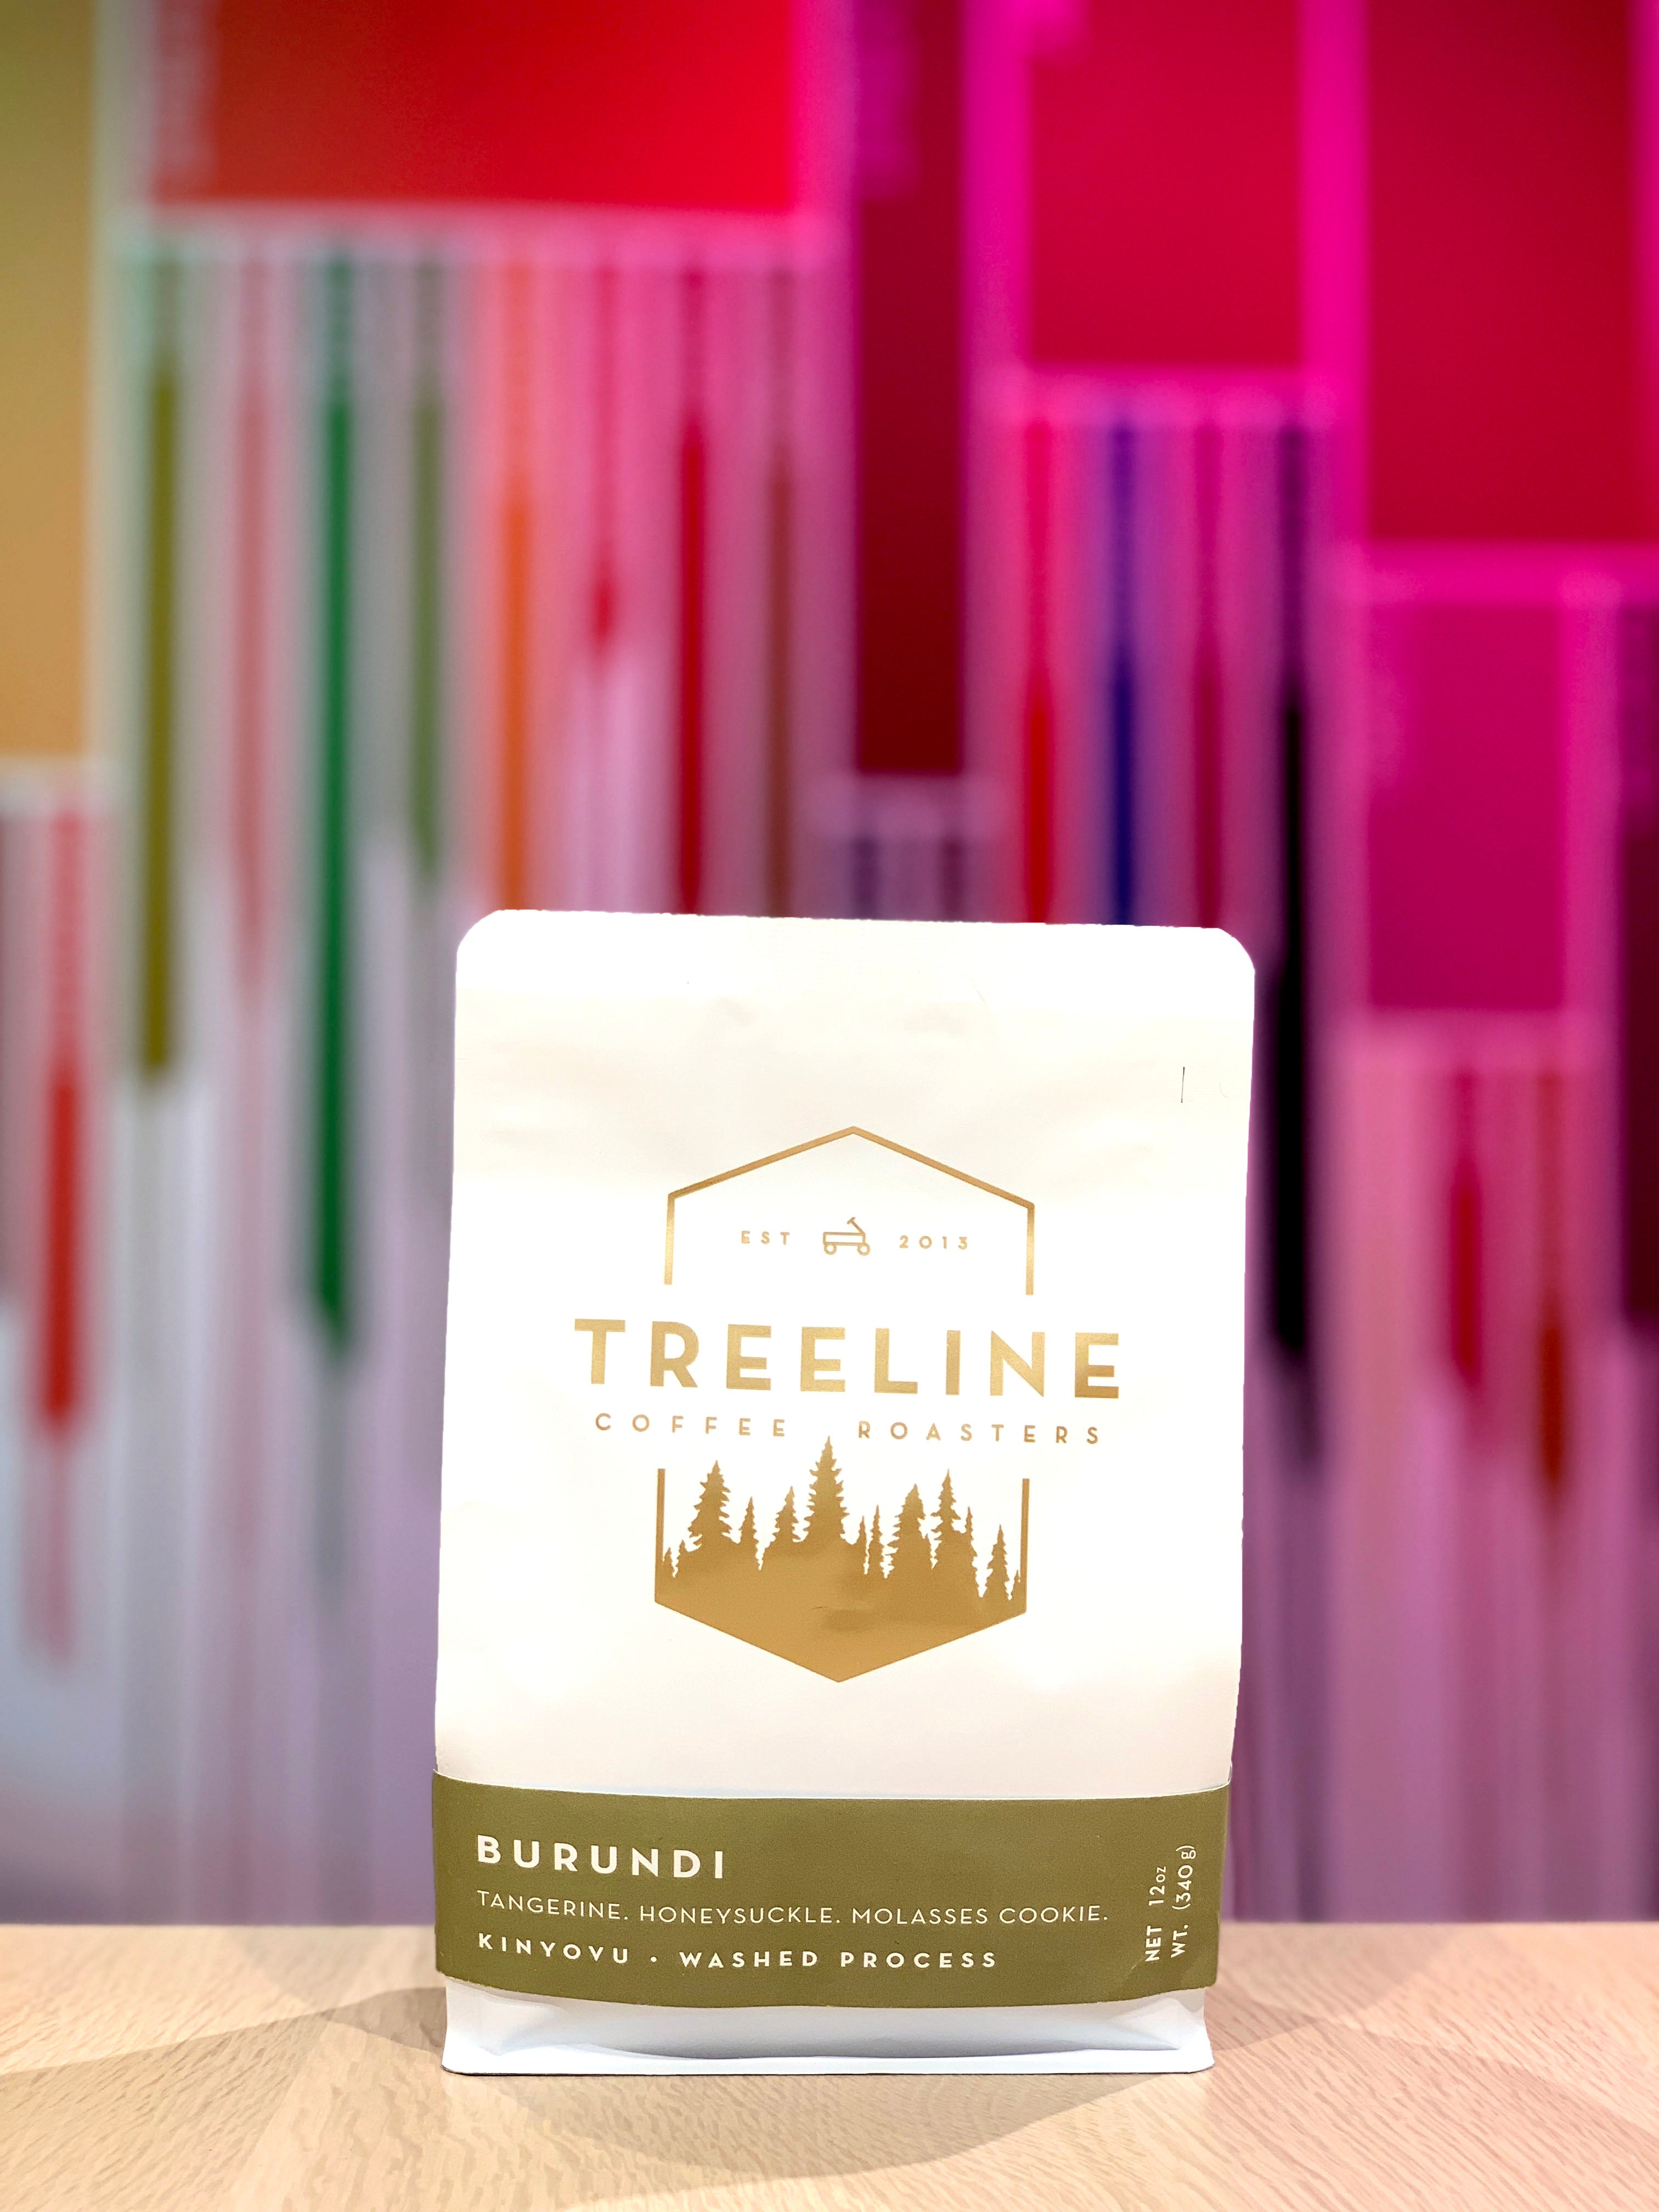 Treeline Coffee Roasters